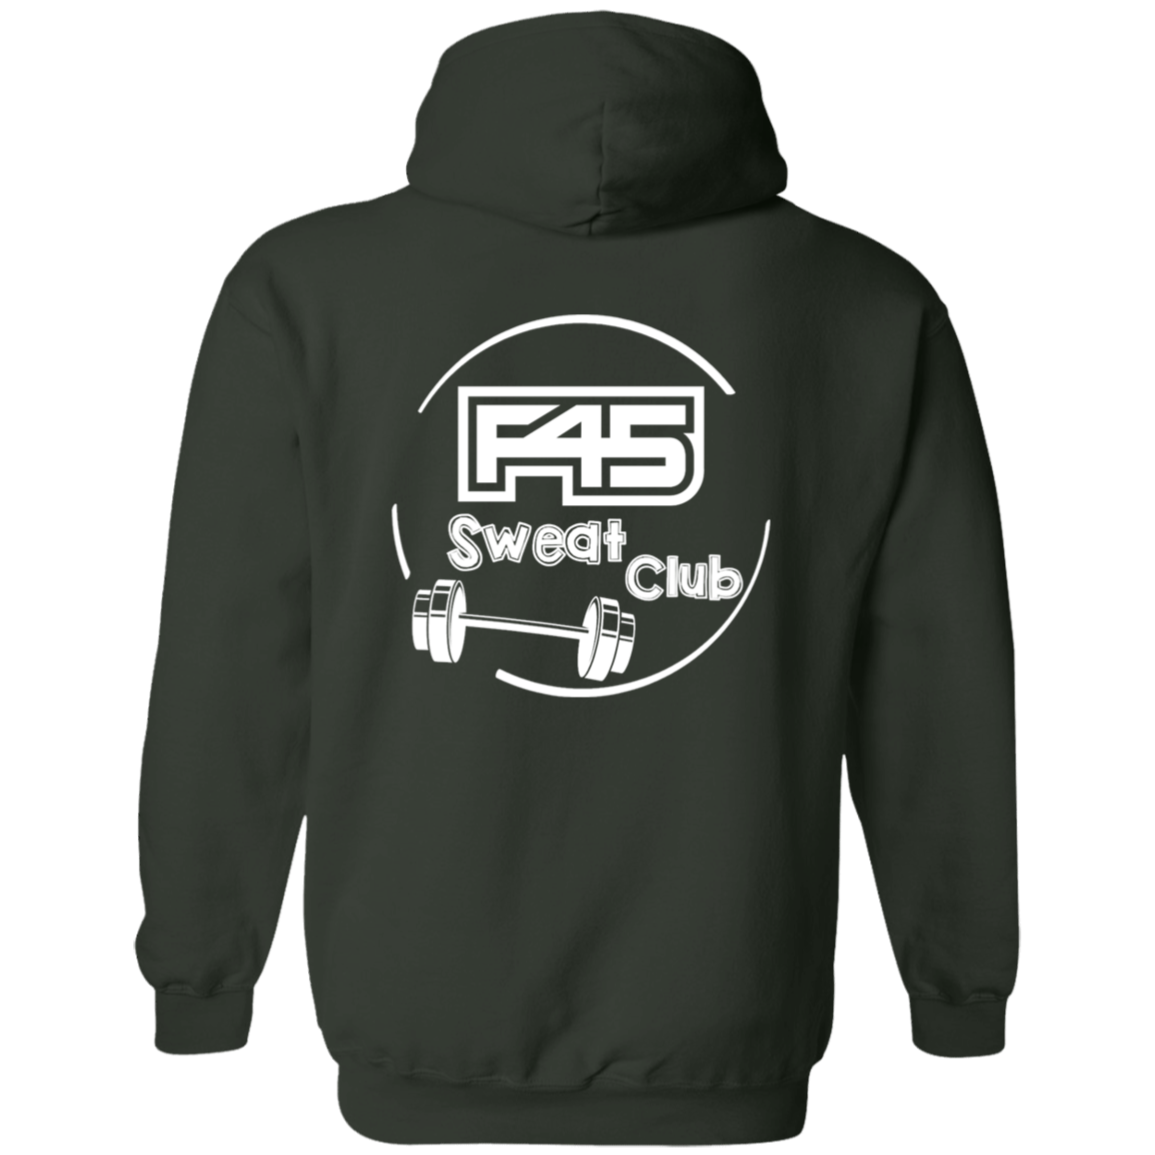 F45 Zip Up Hooded Sweatshirt